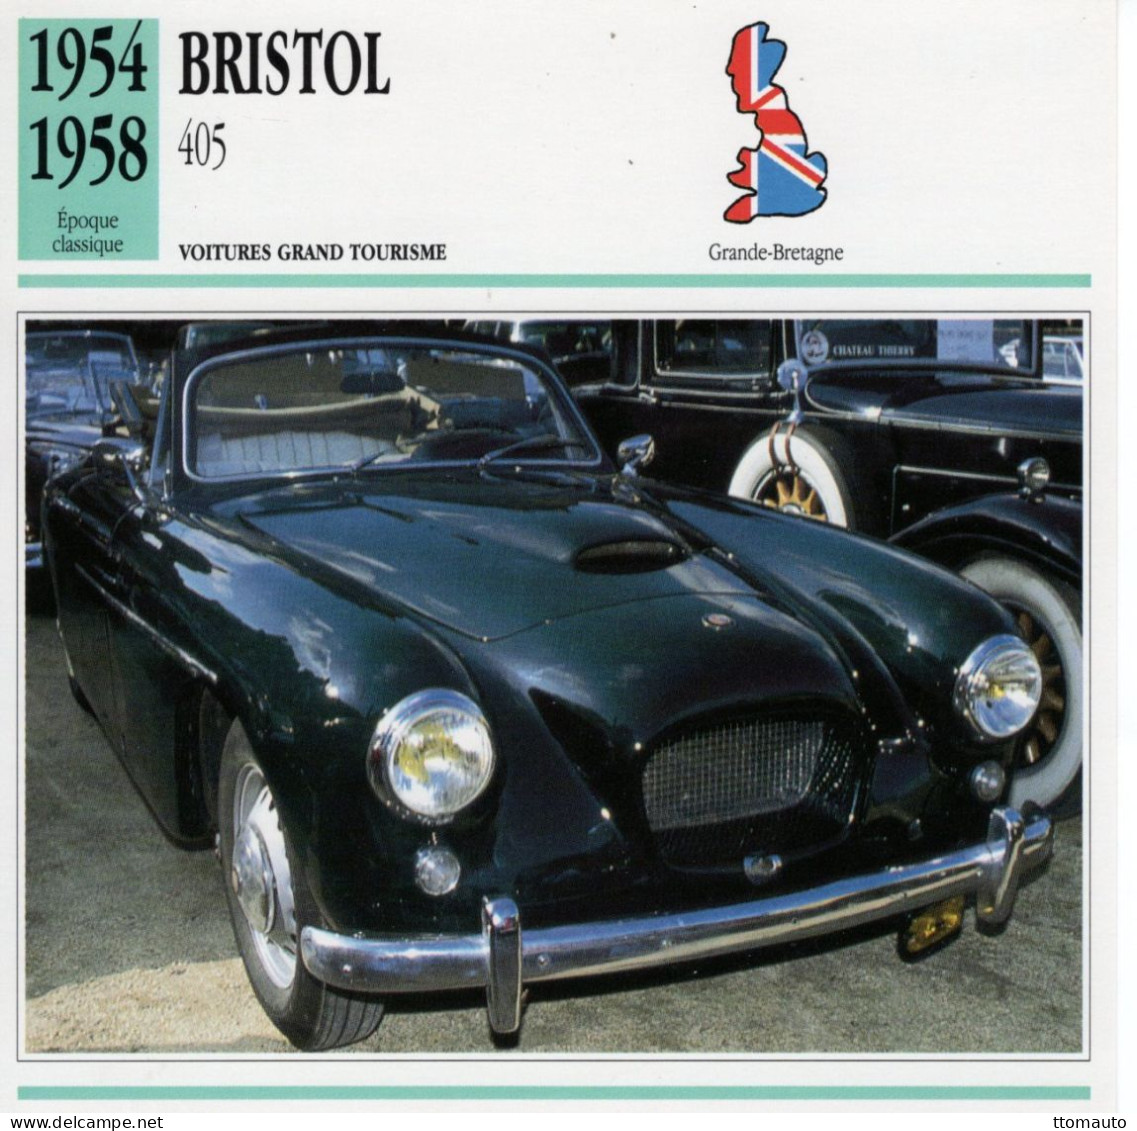 Bristol 405  -  1956  - Voiture Grand Tourisme -  Fiche Technique Automobile (GB) - Automobili